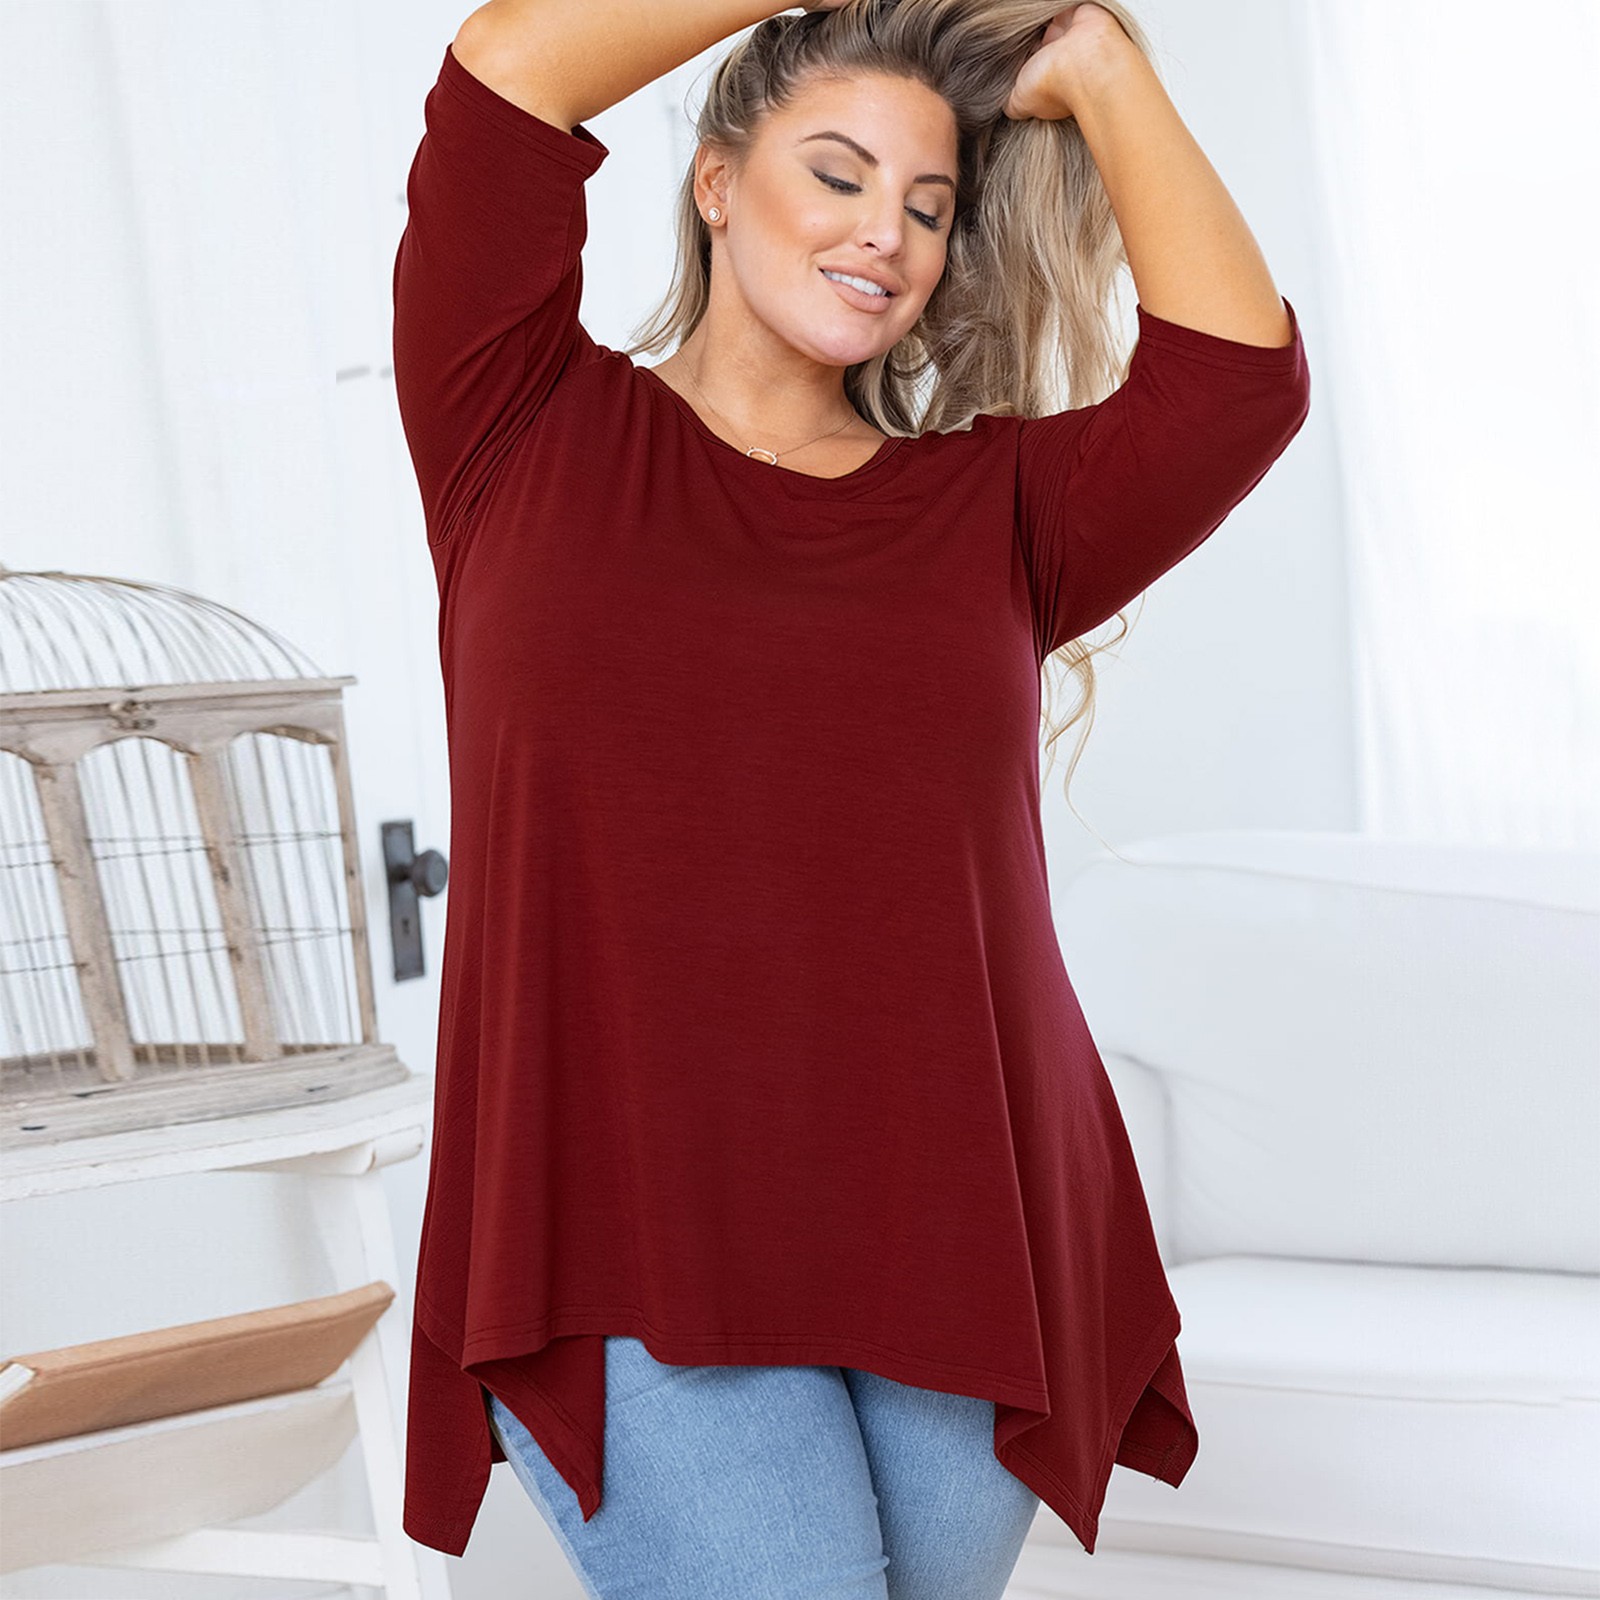 ASDYO Plus Size Tops for Women Tunic Asymmetrical Dress Shirts 3/4 ...